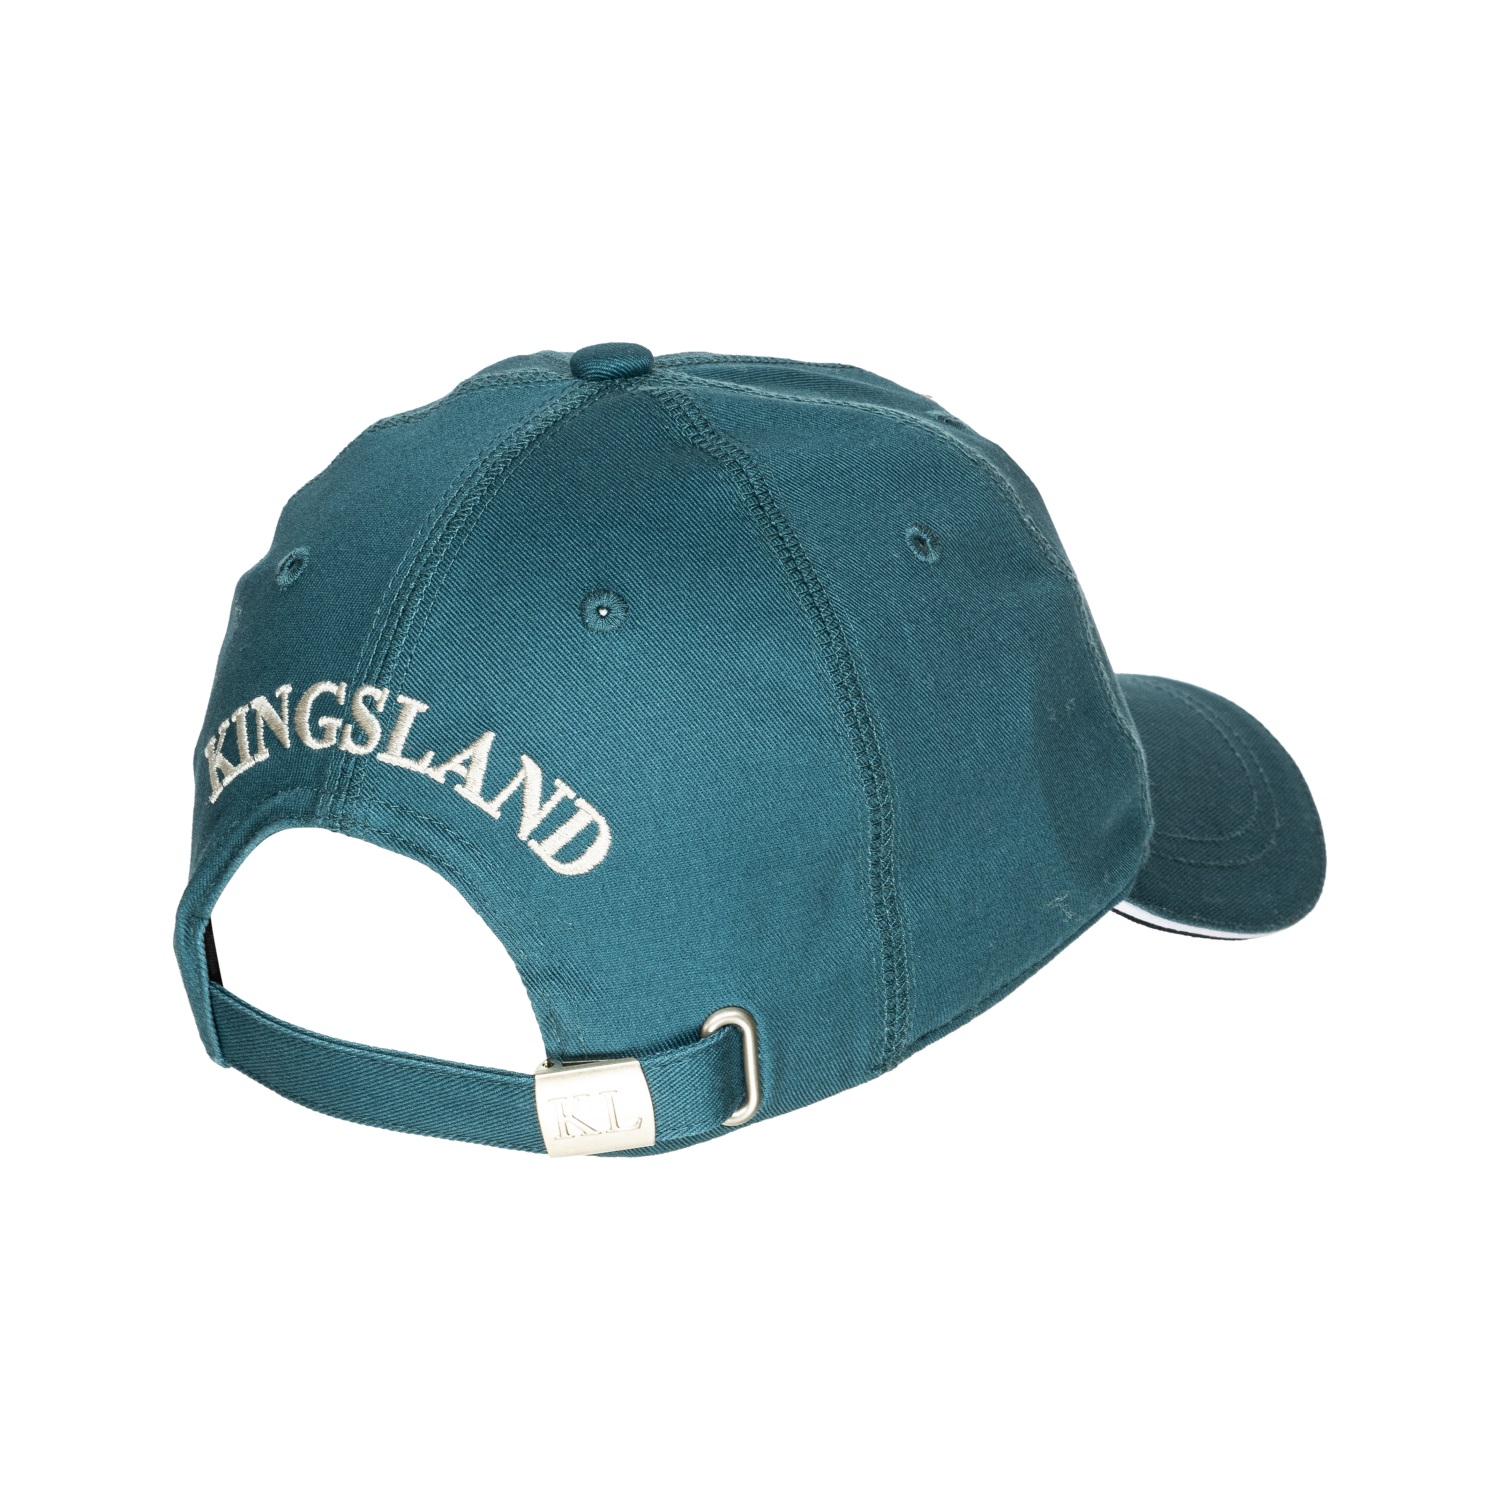 KINGSLAND Unisex Classic Limited Cap, Basecap - grey - onesize - 8